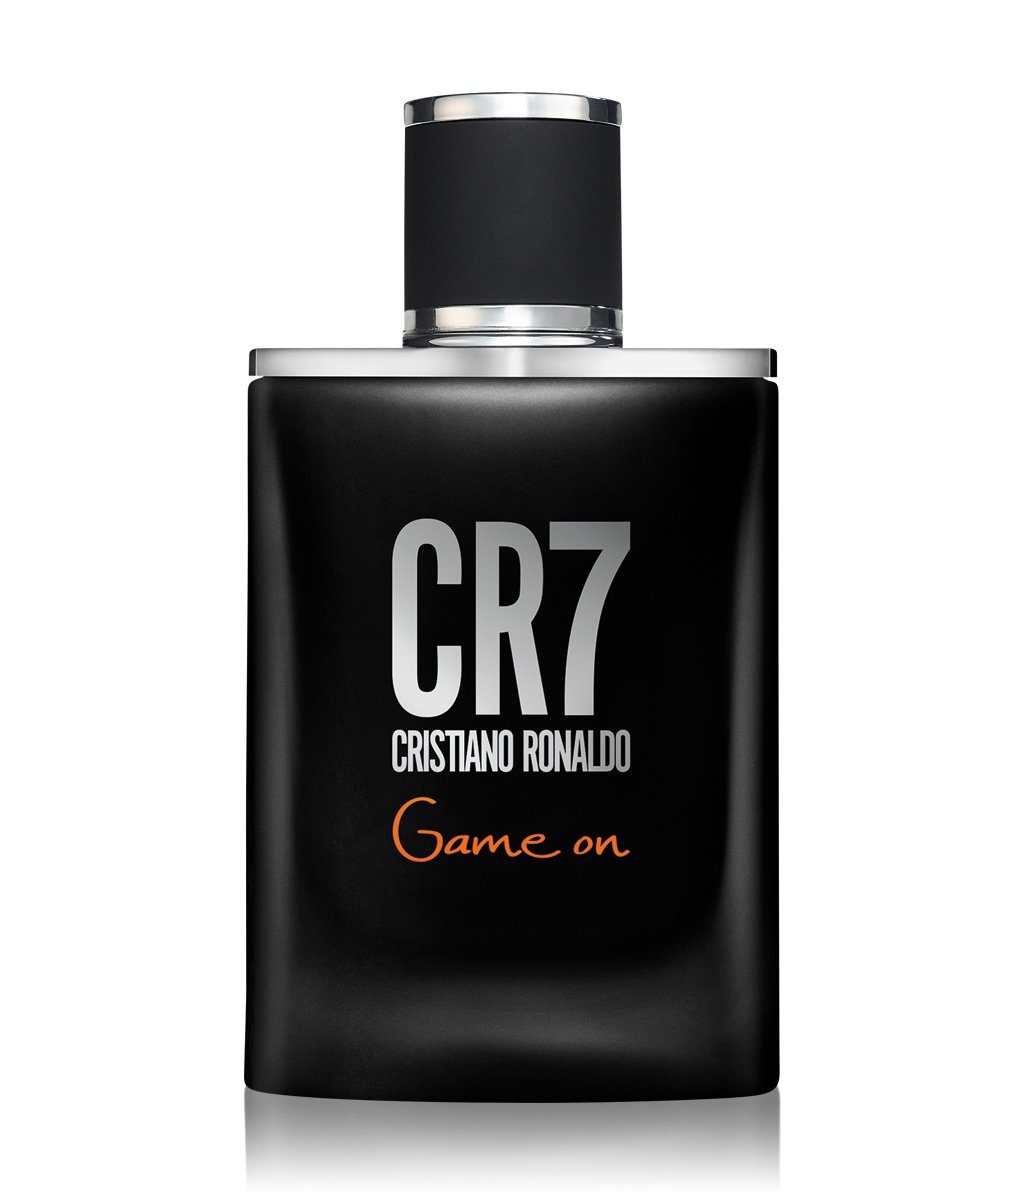 CR7 Cristiano Ronaldo Game On Eau De Toilette - RossoLaccaStore